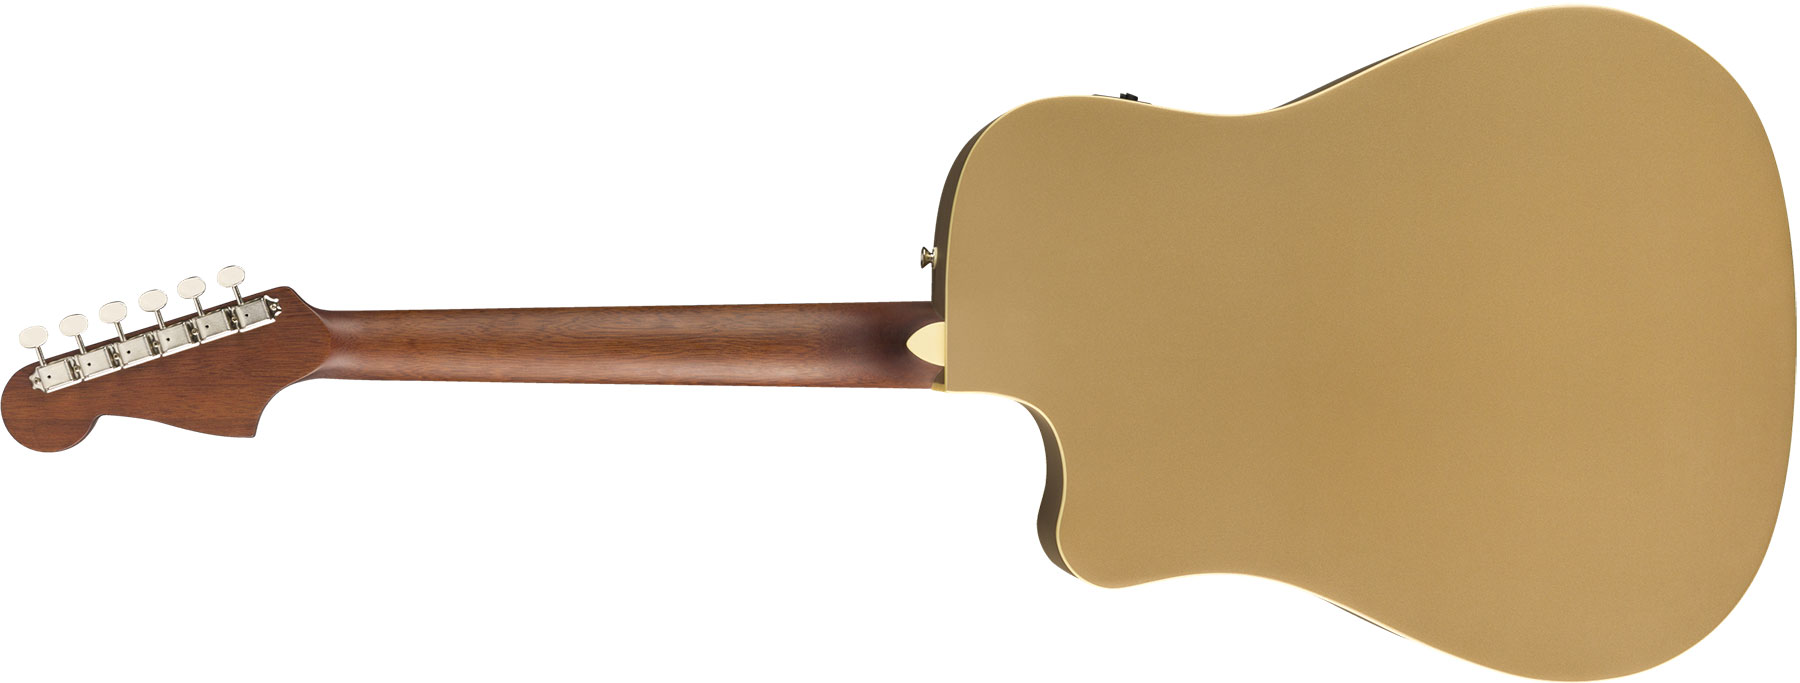 Fender Redondo Player California Dreadnought Cw Epicea Acajou Wal - Bronze Satin - Guitarra electro acustica - Variation 1